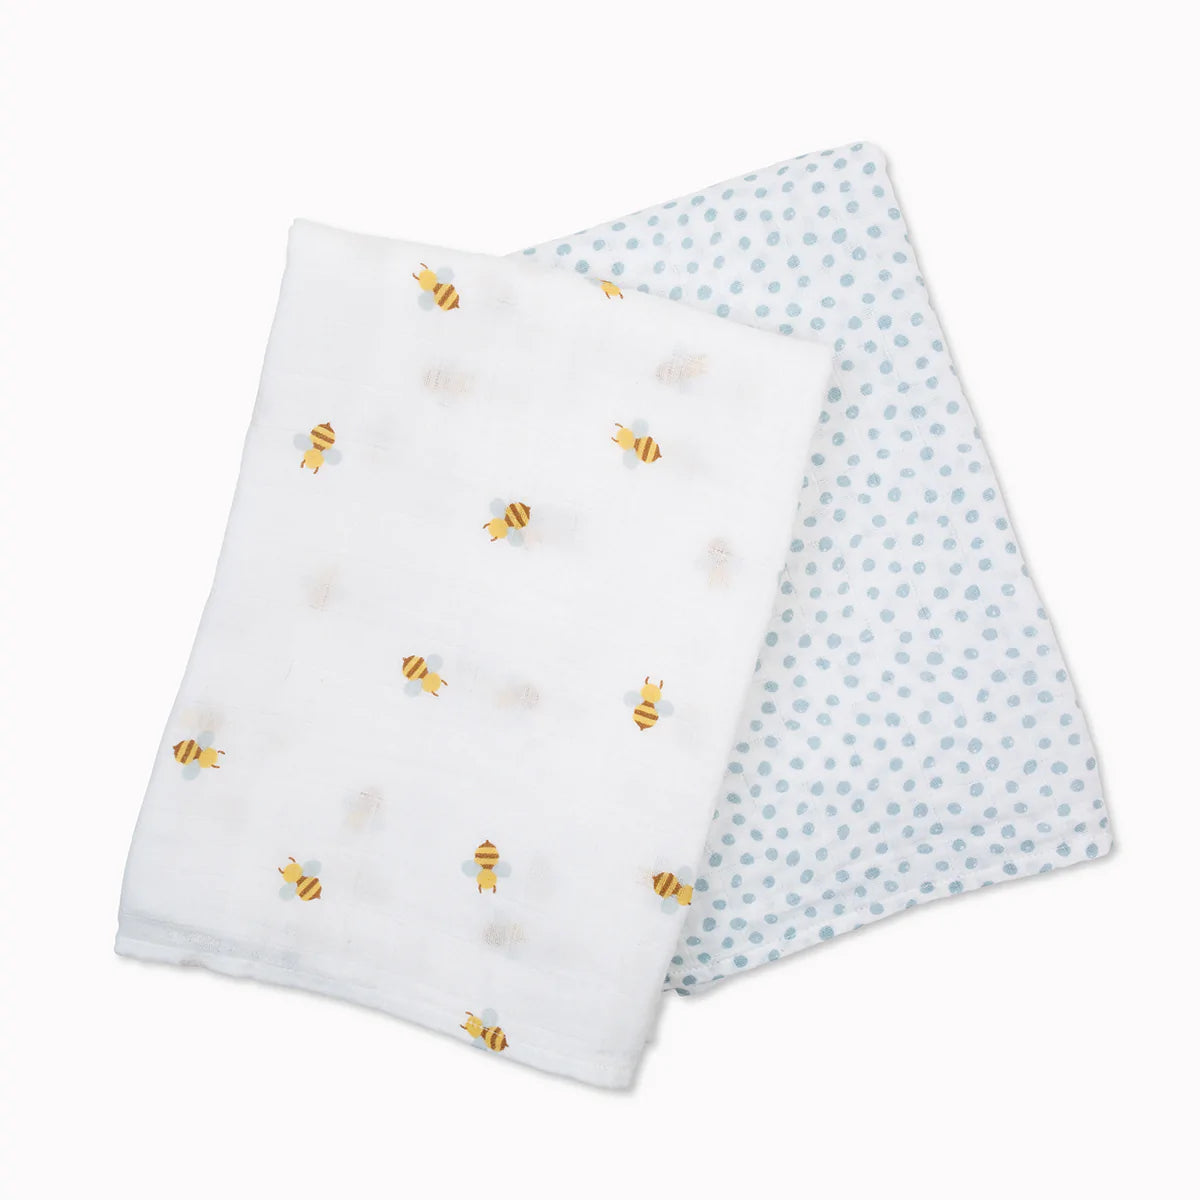 Lulujo Cotton Muslin Swaddle Blanket 2 PK - Bees & Dots 2